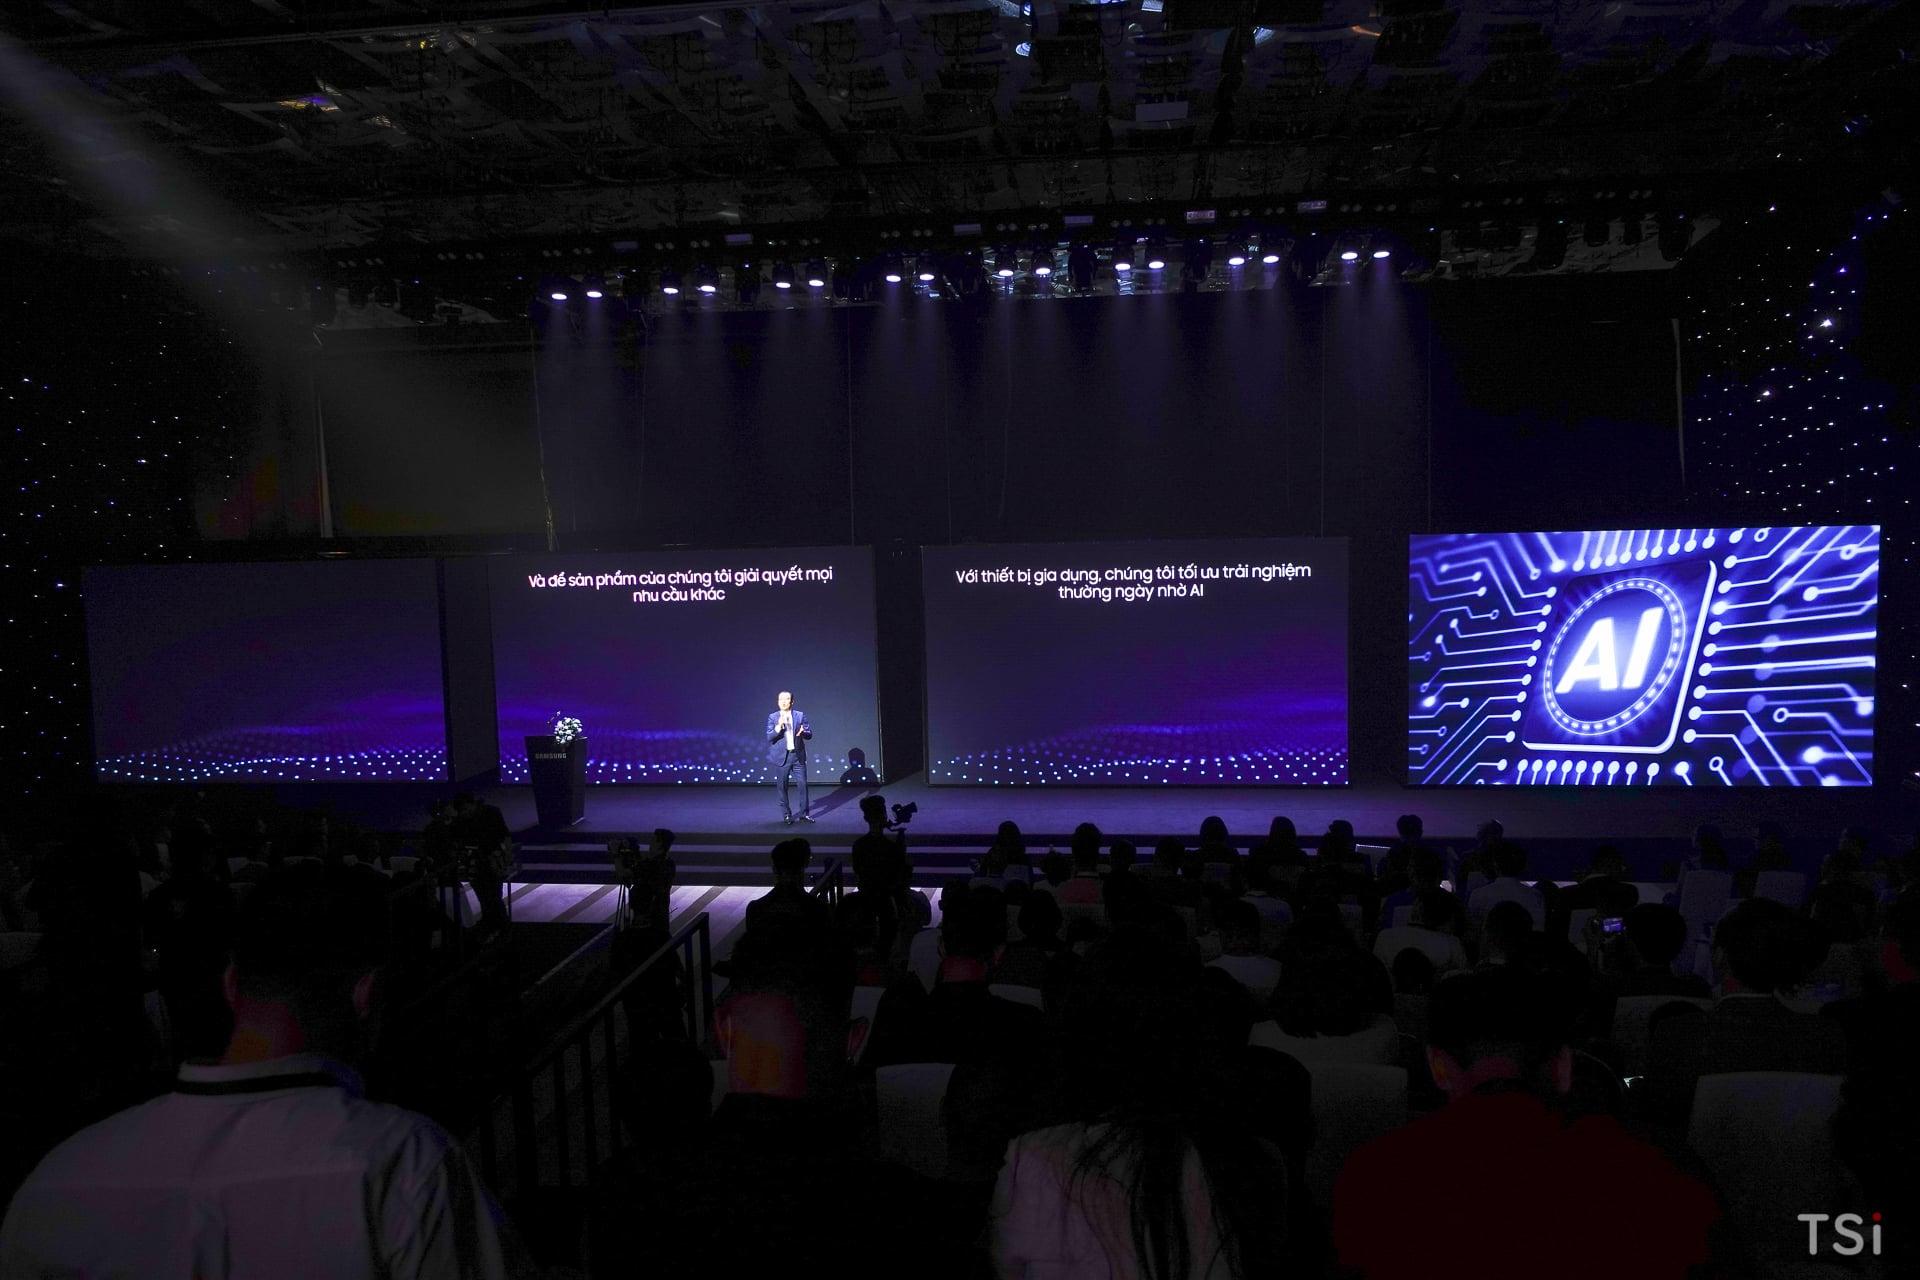 Ra mắt TV Samsung Micro LED 2021 tại sự kiện 'tuyệt tác công nghệ'